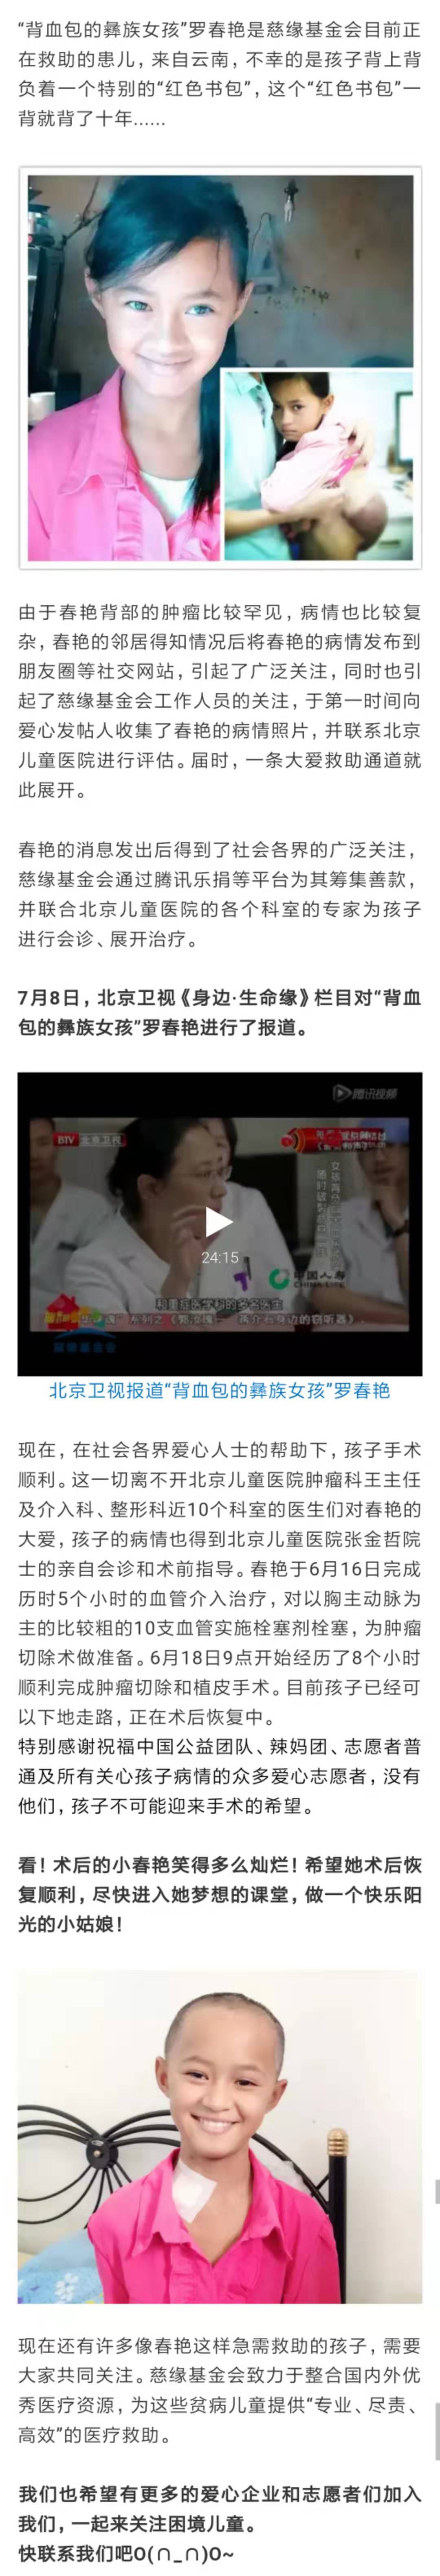 2015.7.5 北京卫视《身边·生命缘》报道“背血包的彝族女孩”.jpg